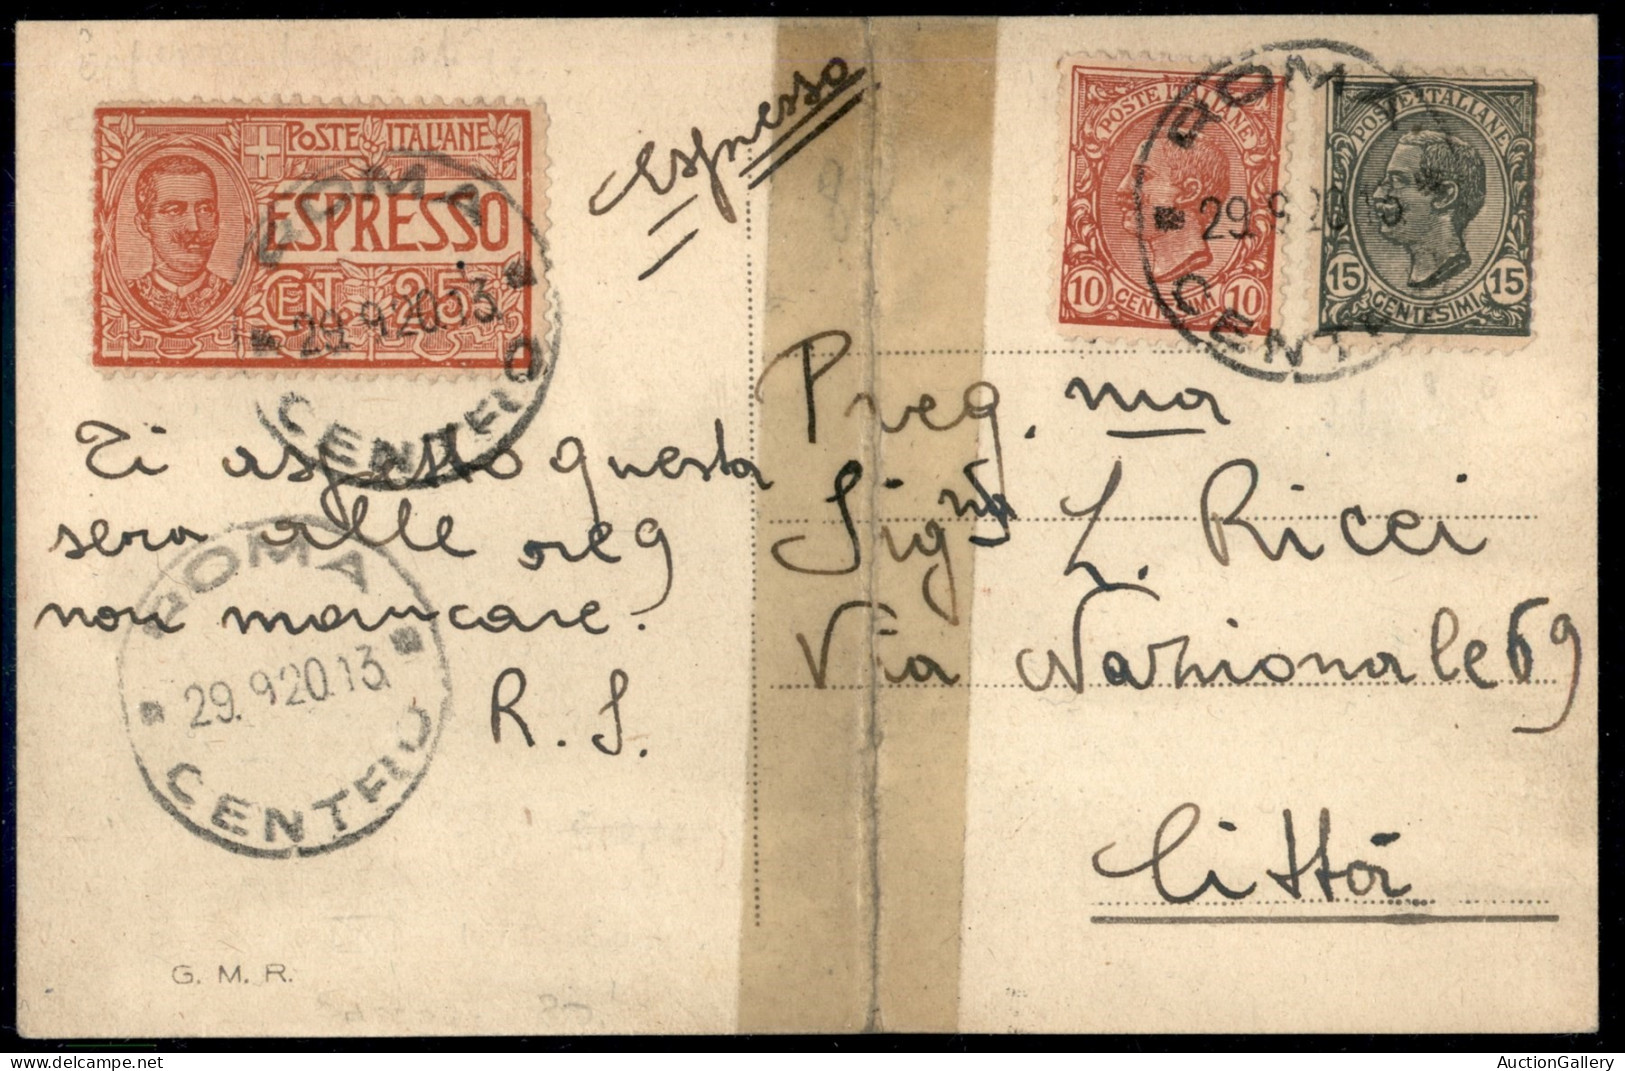 Regno - Posta Aerea - 1917/1926 - Piccolo insieme di 5 cartoline e 3 lettere affrancate con valori di Posta Aerea tra cu